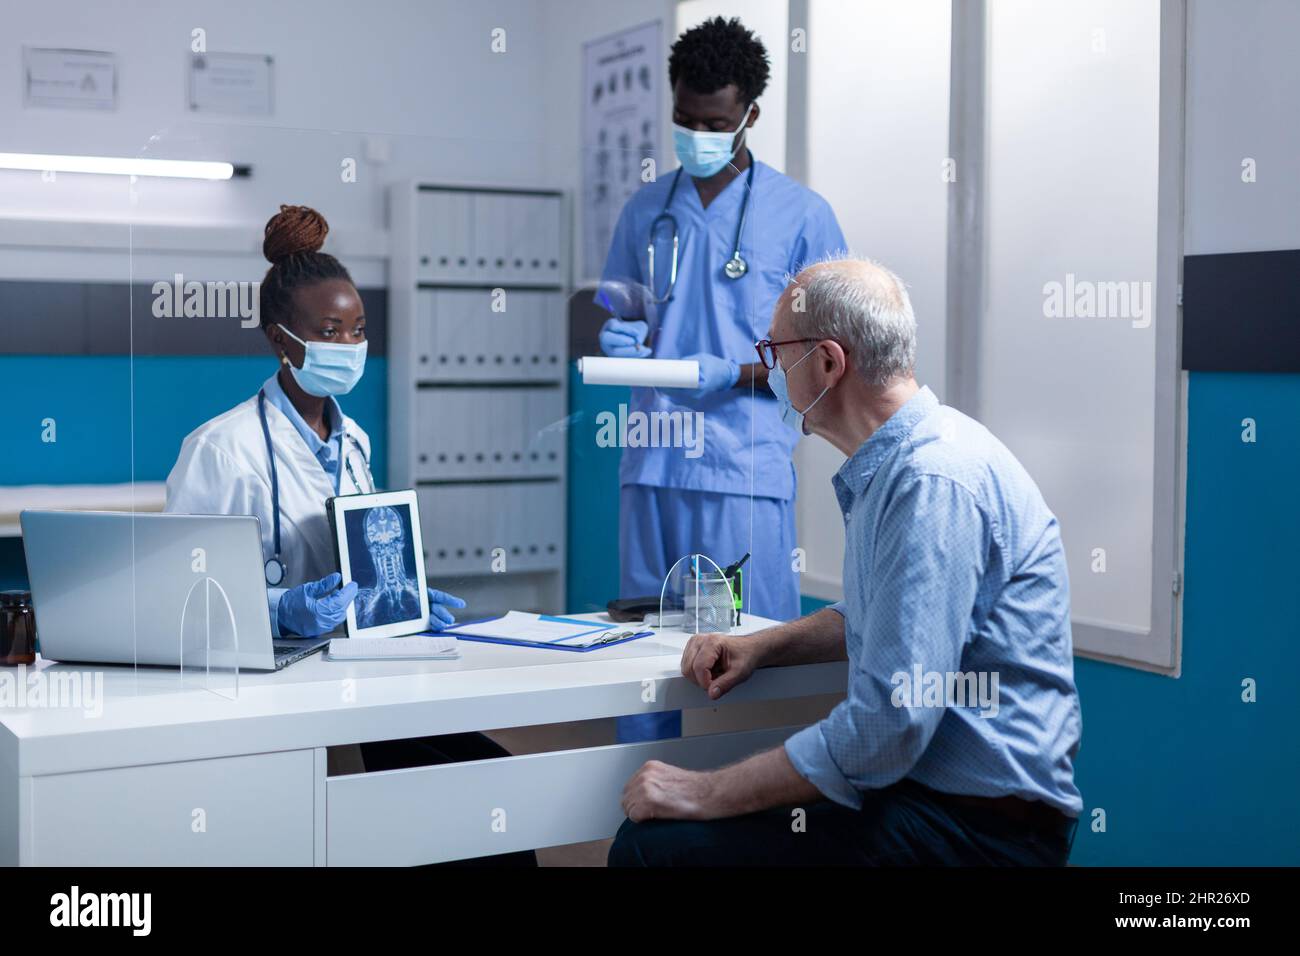 Facharzt für Klinikradiologie hält ein Röntgenbild und erklärt dem Rentner die Krankheit, während die Krankenschwester Notizen in die Zwischenablage nimmt. Ein erfahrener Radiologe zeigt einem älteren Mann ein MRT-Bild. Stockfoto